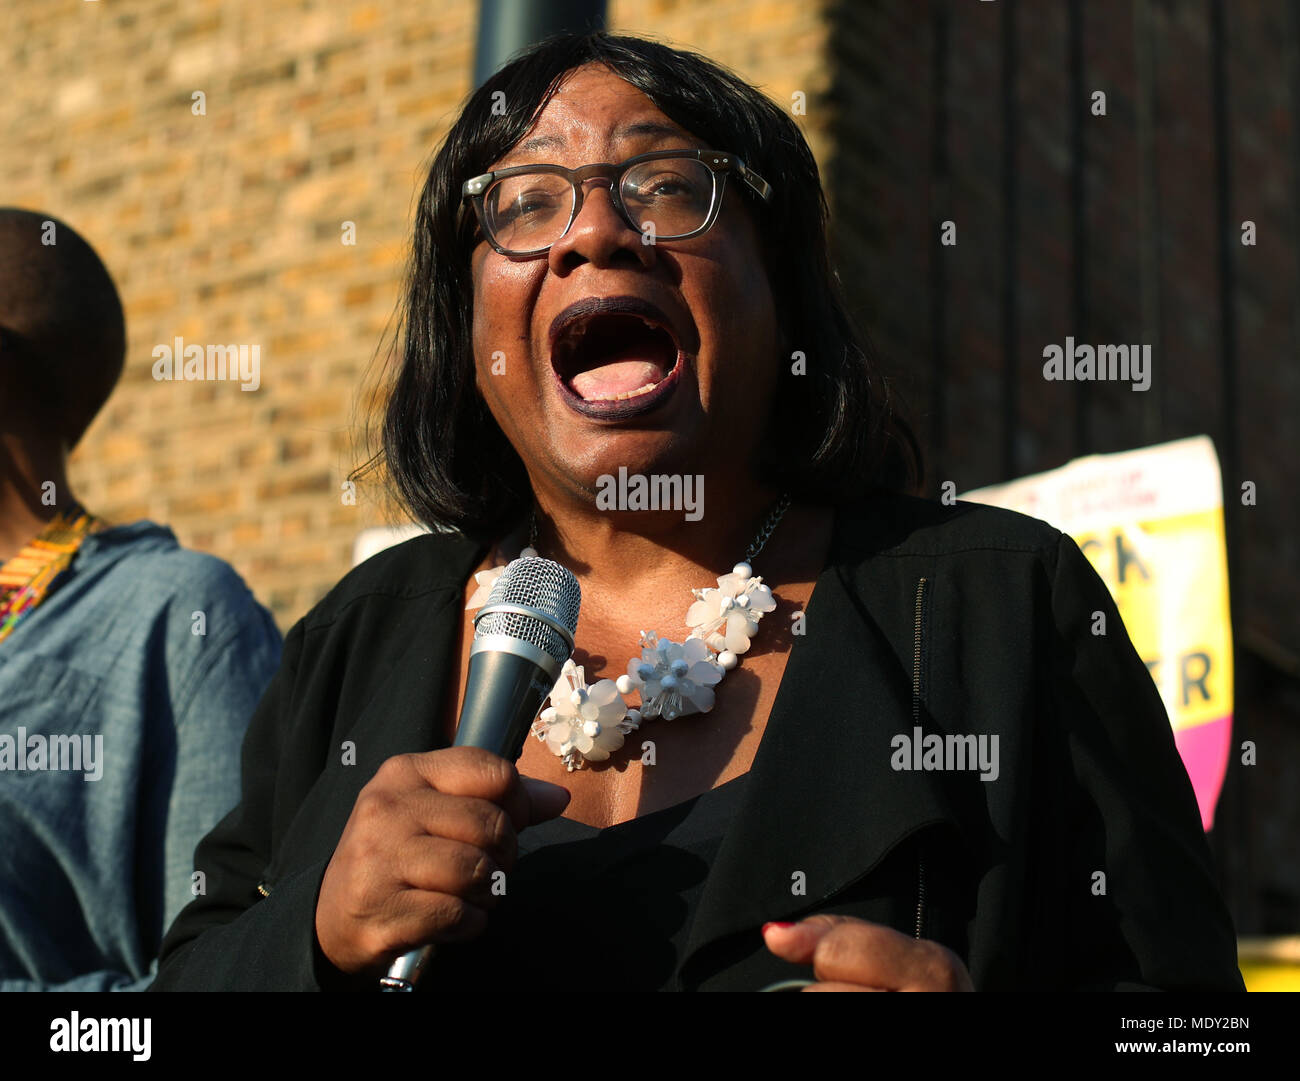 Casa sombra Secretario Diane Abbott, habla durante un evento en la Plaza Windrush, Brixton, al sur de Londres, organizada por levantarse al racismo en solidaridad con la generación Windrush y sus familias. Foto de stock